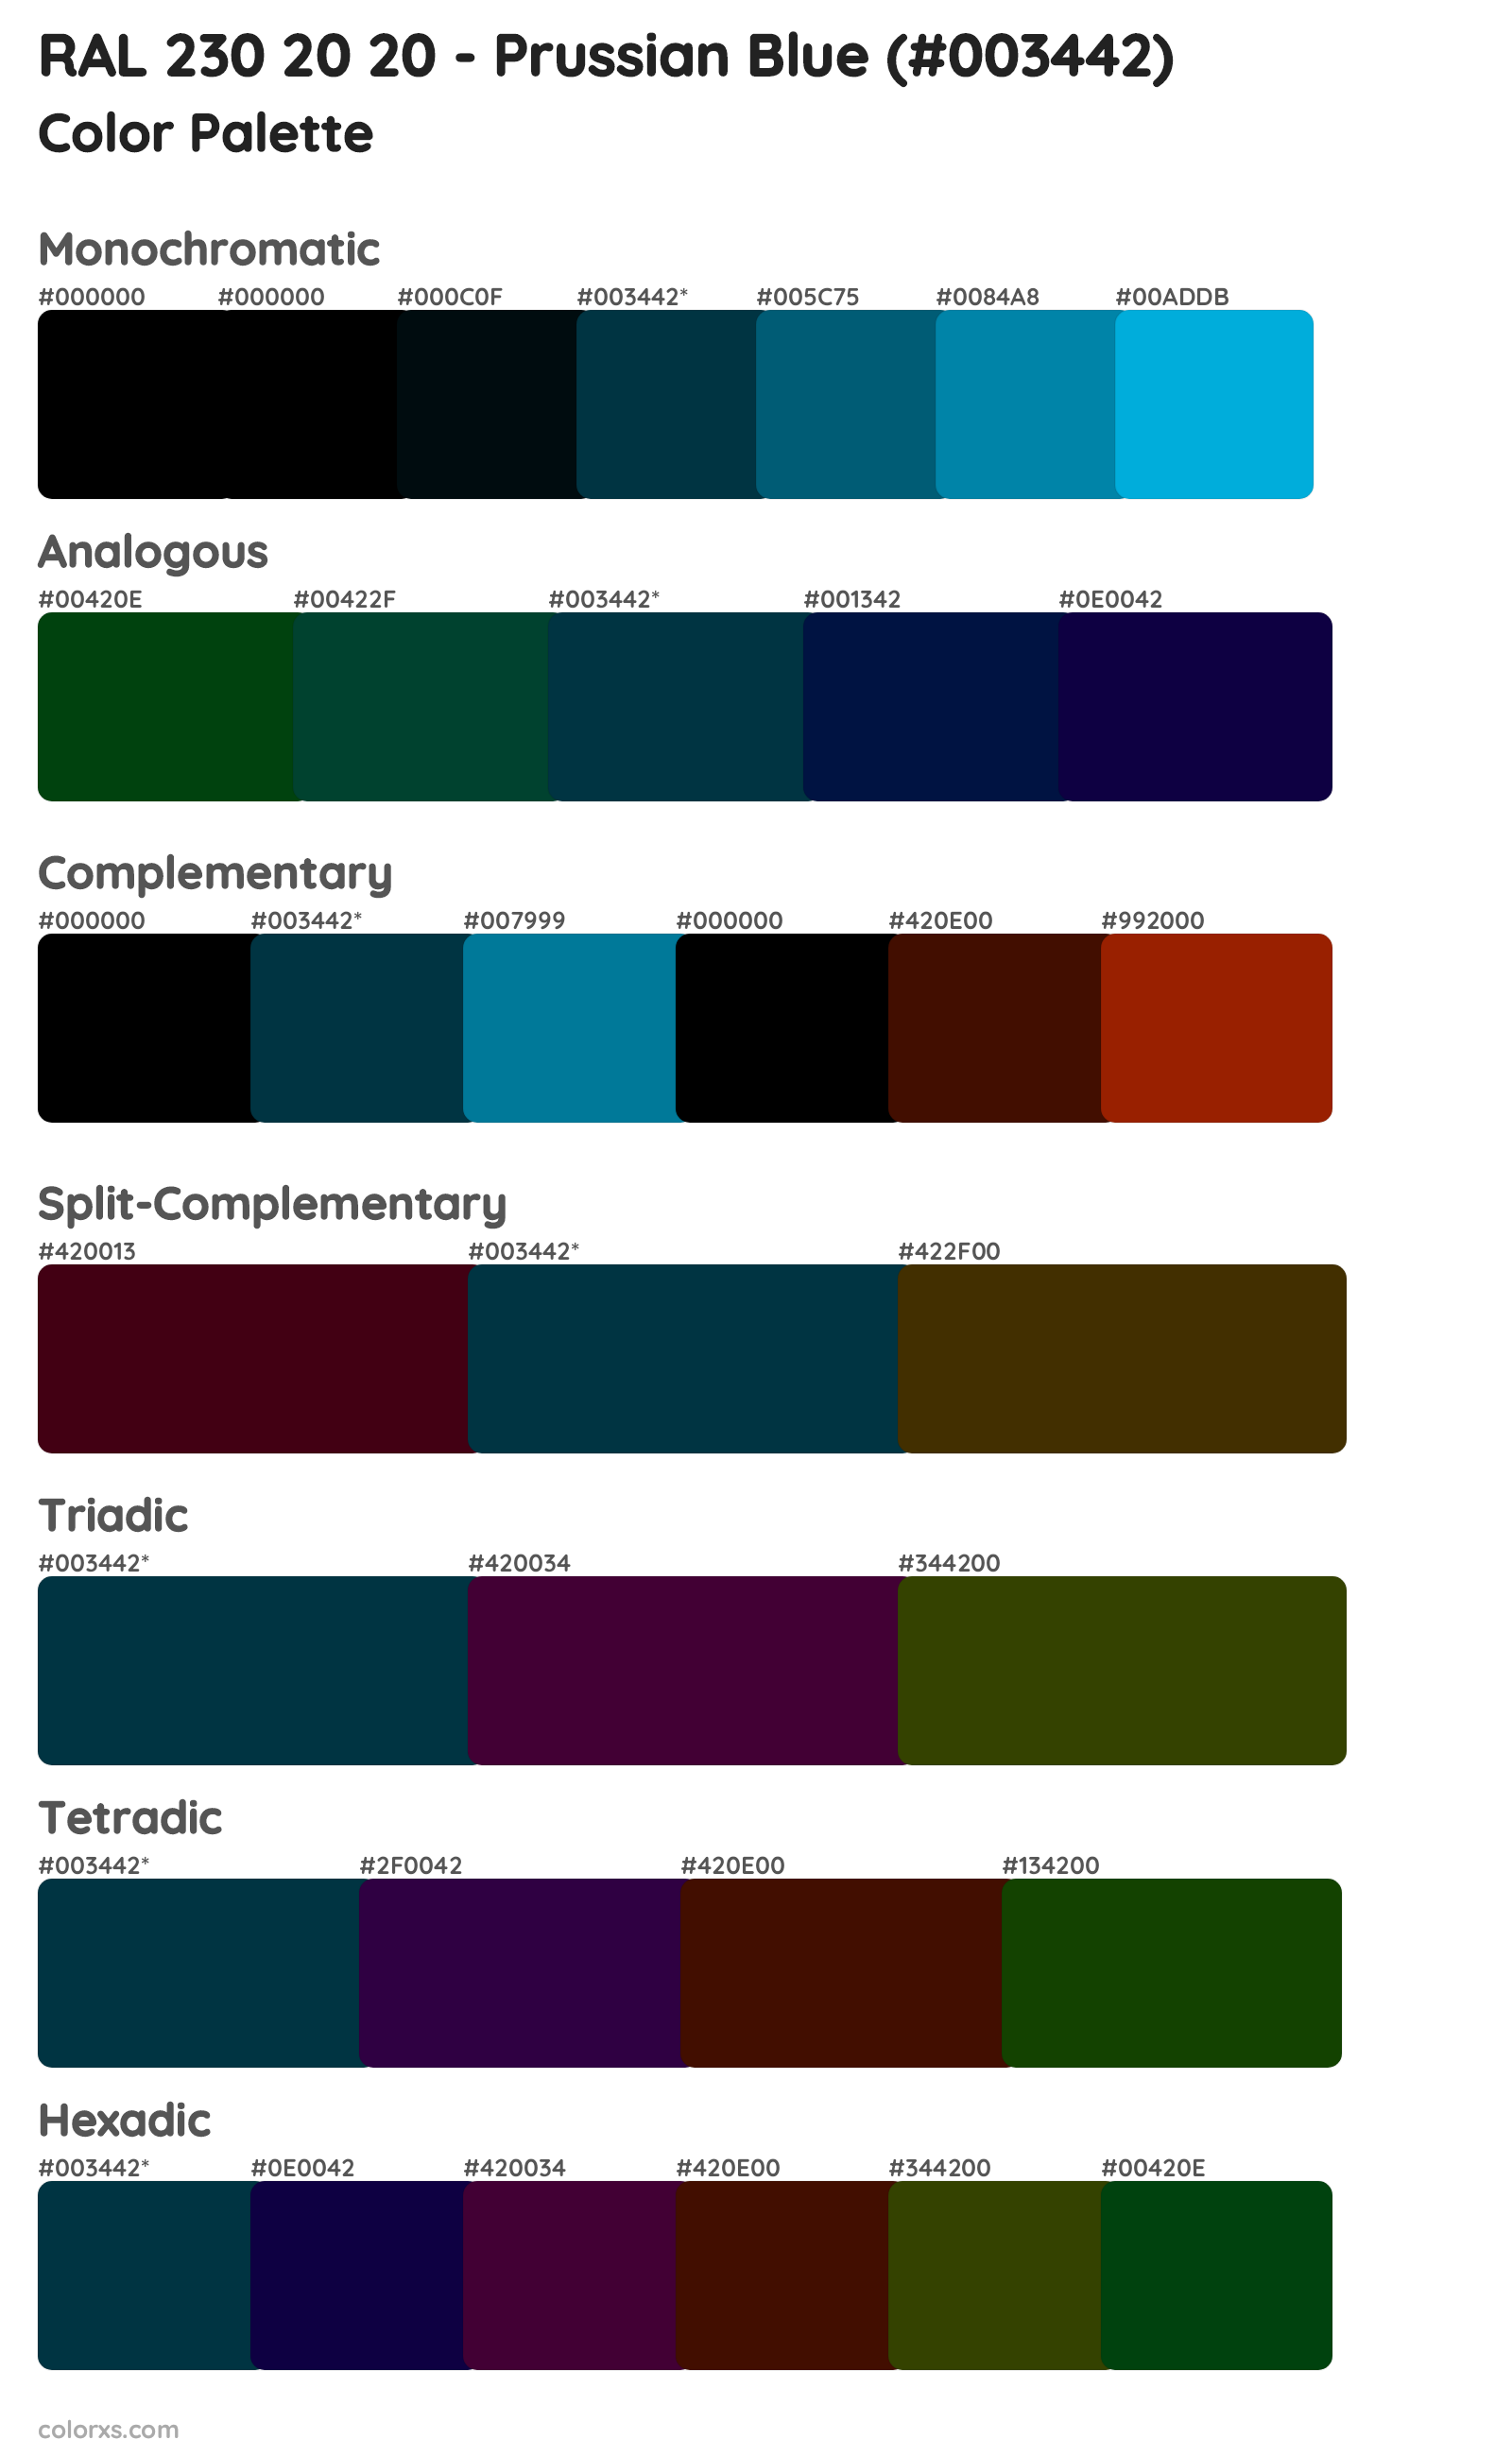 RAL 230 20 20 - Prussian Blue Color Scheme Palettes